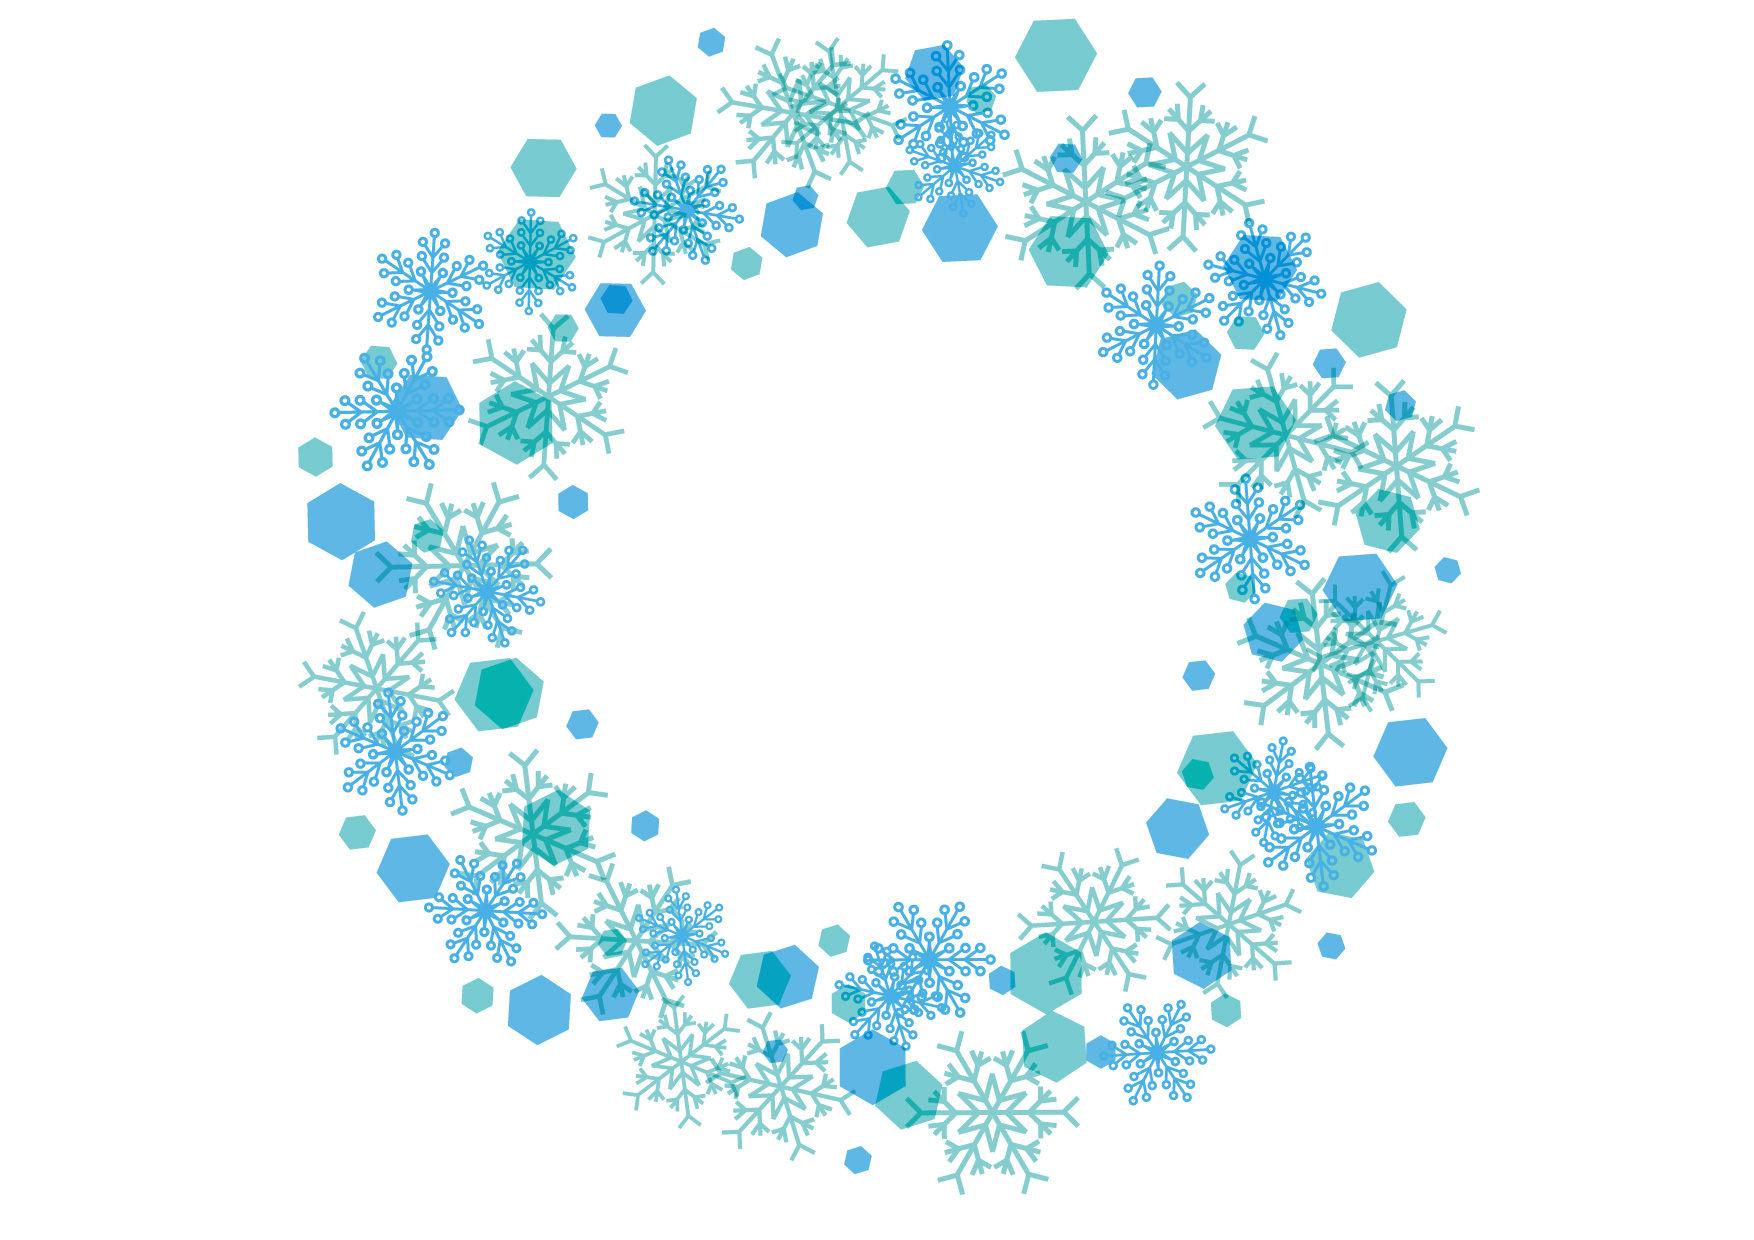 可愛いイラスト無料 雪の結晶 フレーム 背景 青色 Free Illustration Snowflakes Frame Background Blue 公式 イラスト素材サイト イラストダウンロード